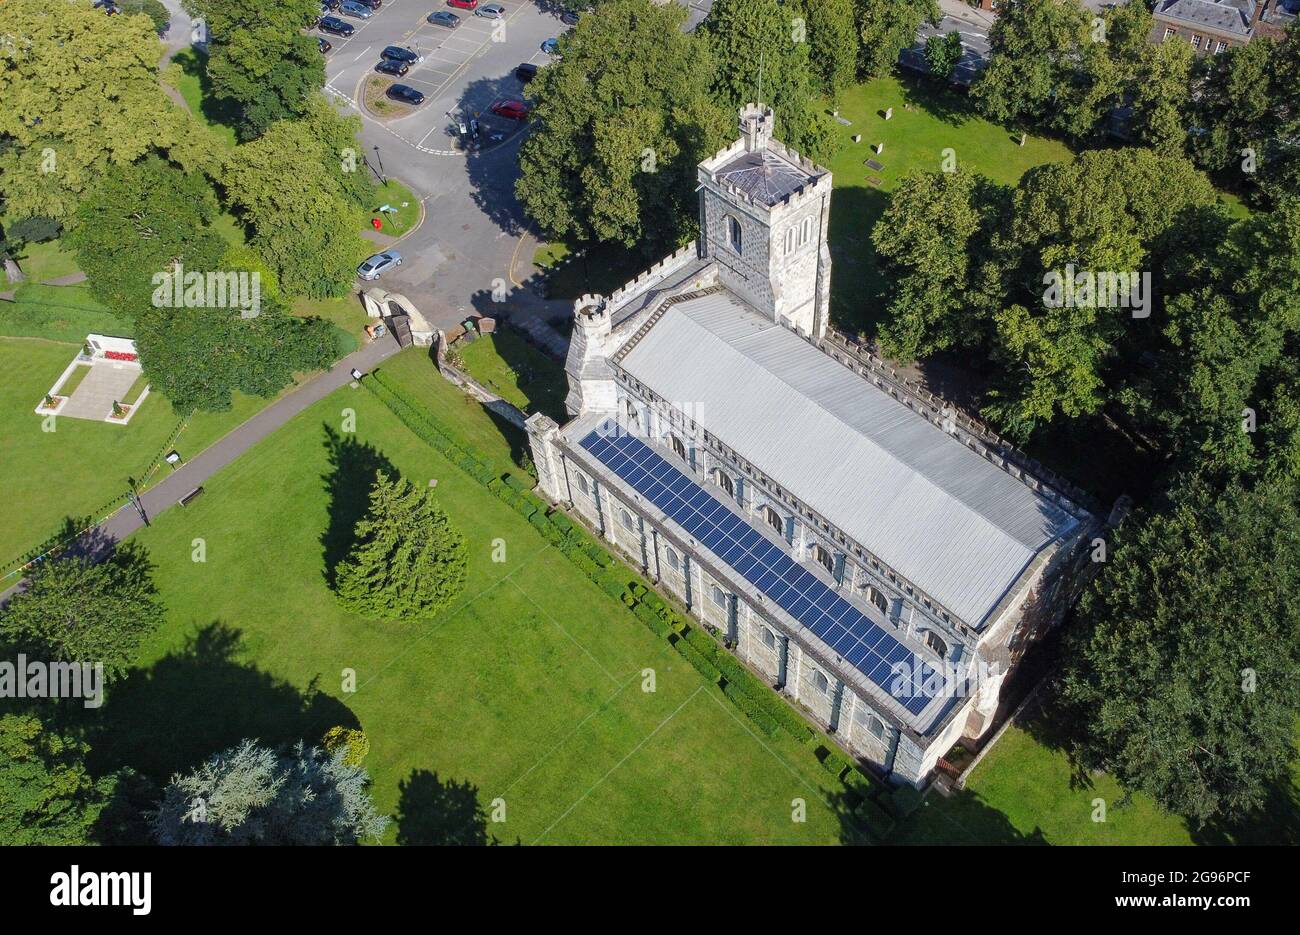 DUNSTABLE, ROYAUME-UNI - 16 juillet 2021 : photo aérienne de l'église prieuré de Saint-Pierre à Dunstable, Royaume-Uni Banque D'Images